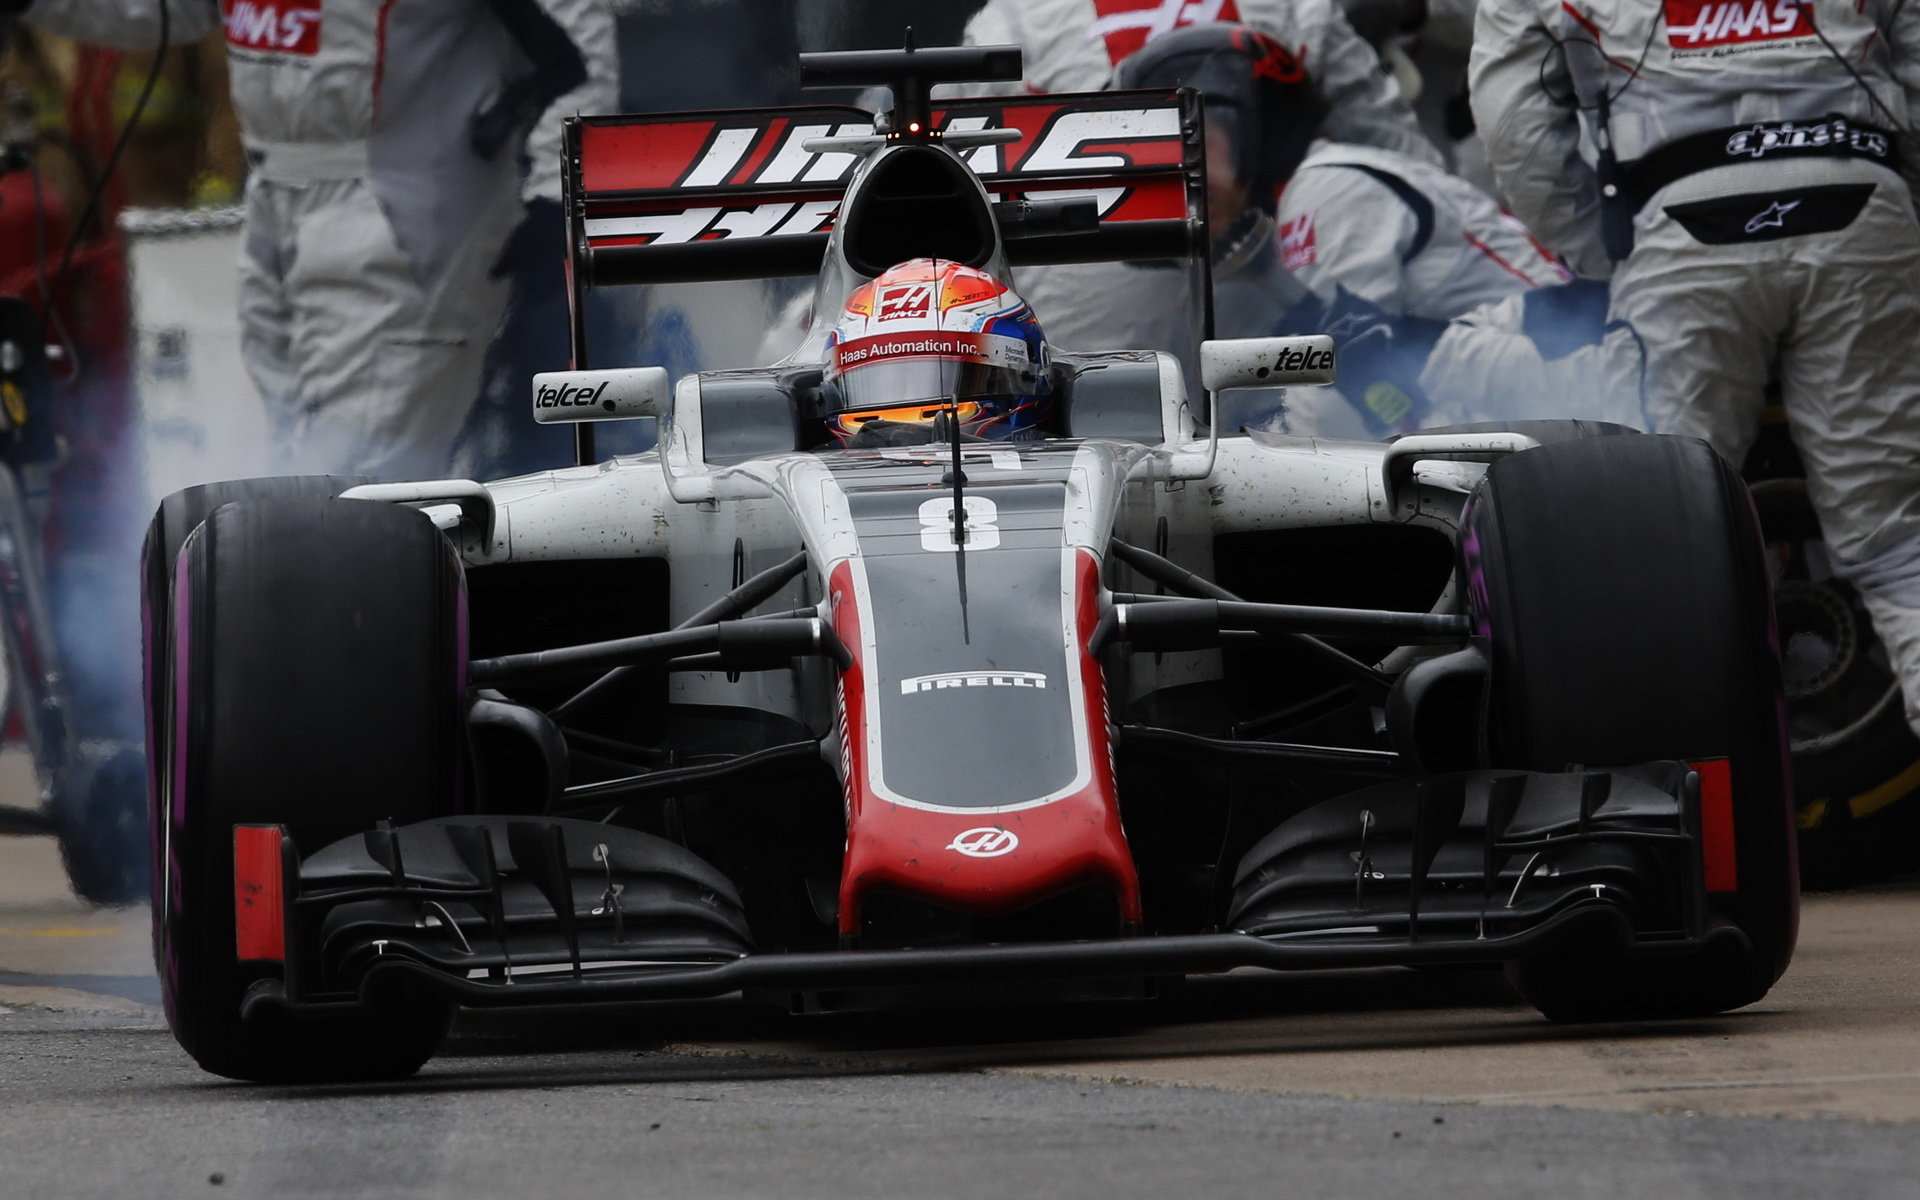 Romain Grosjean v závodě v Kanadě, kde opět řešil problém s předním křídlem